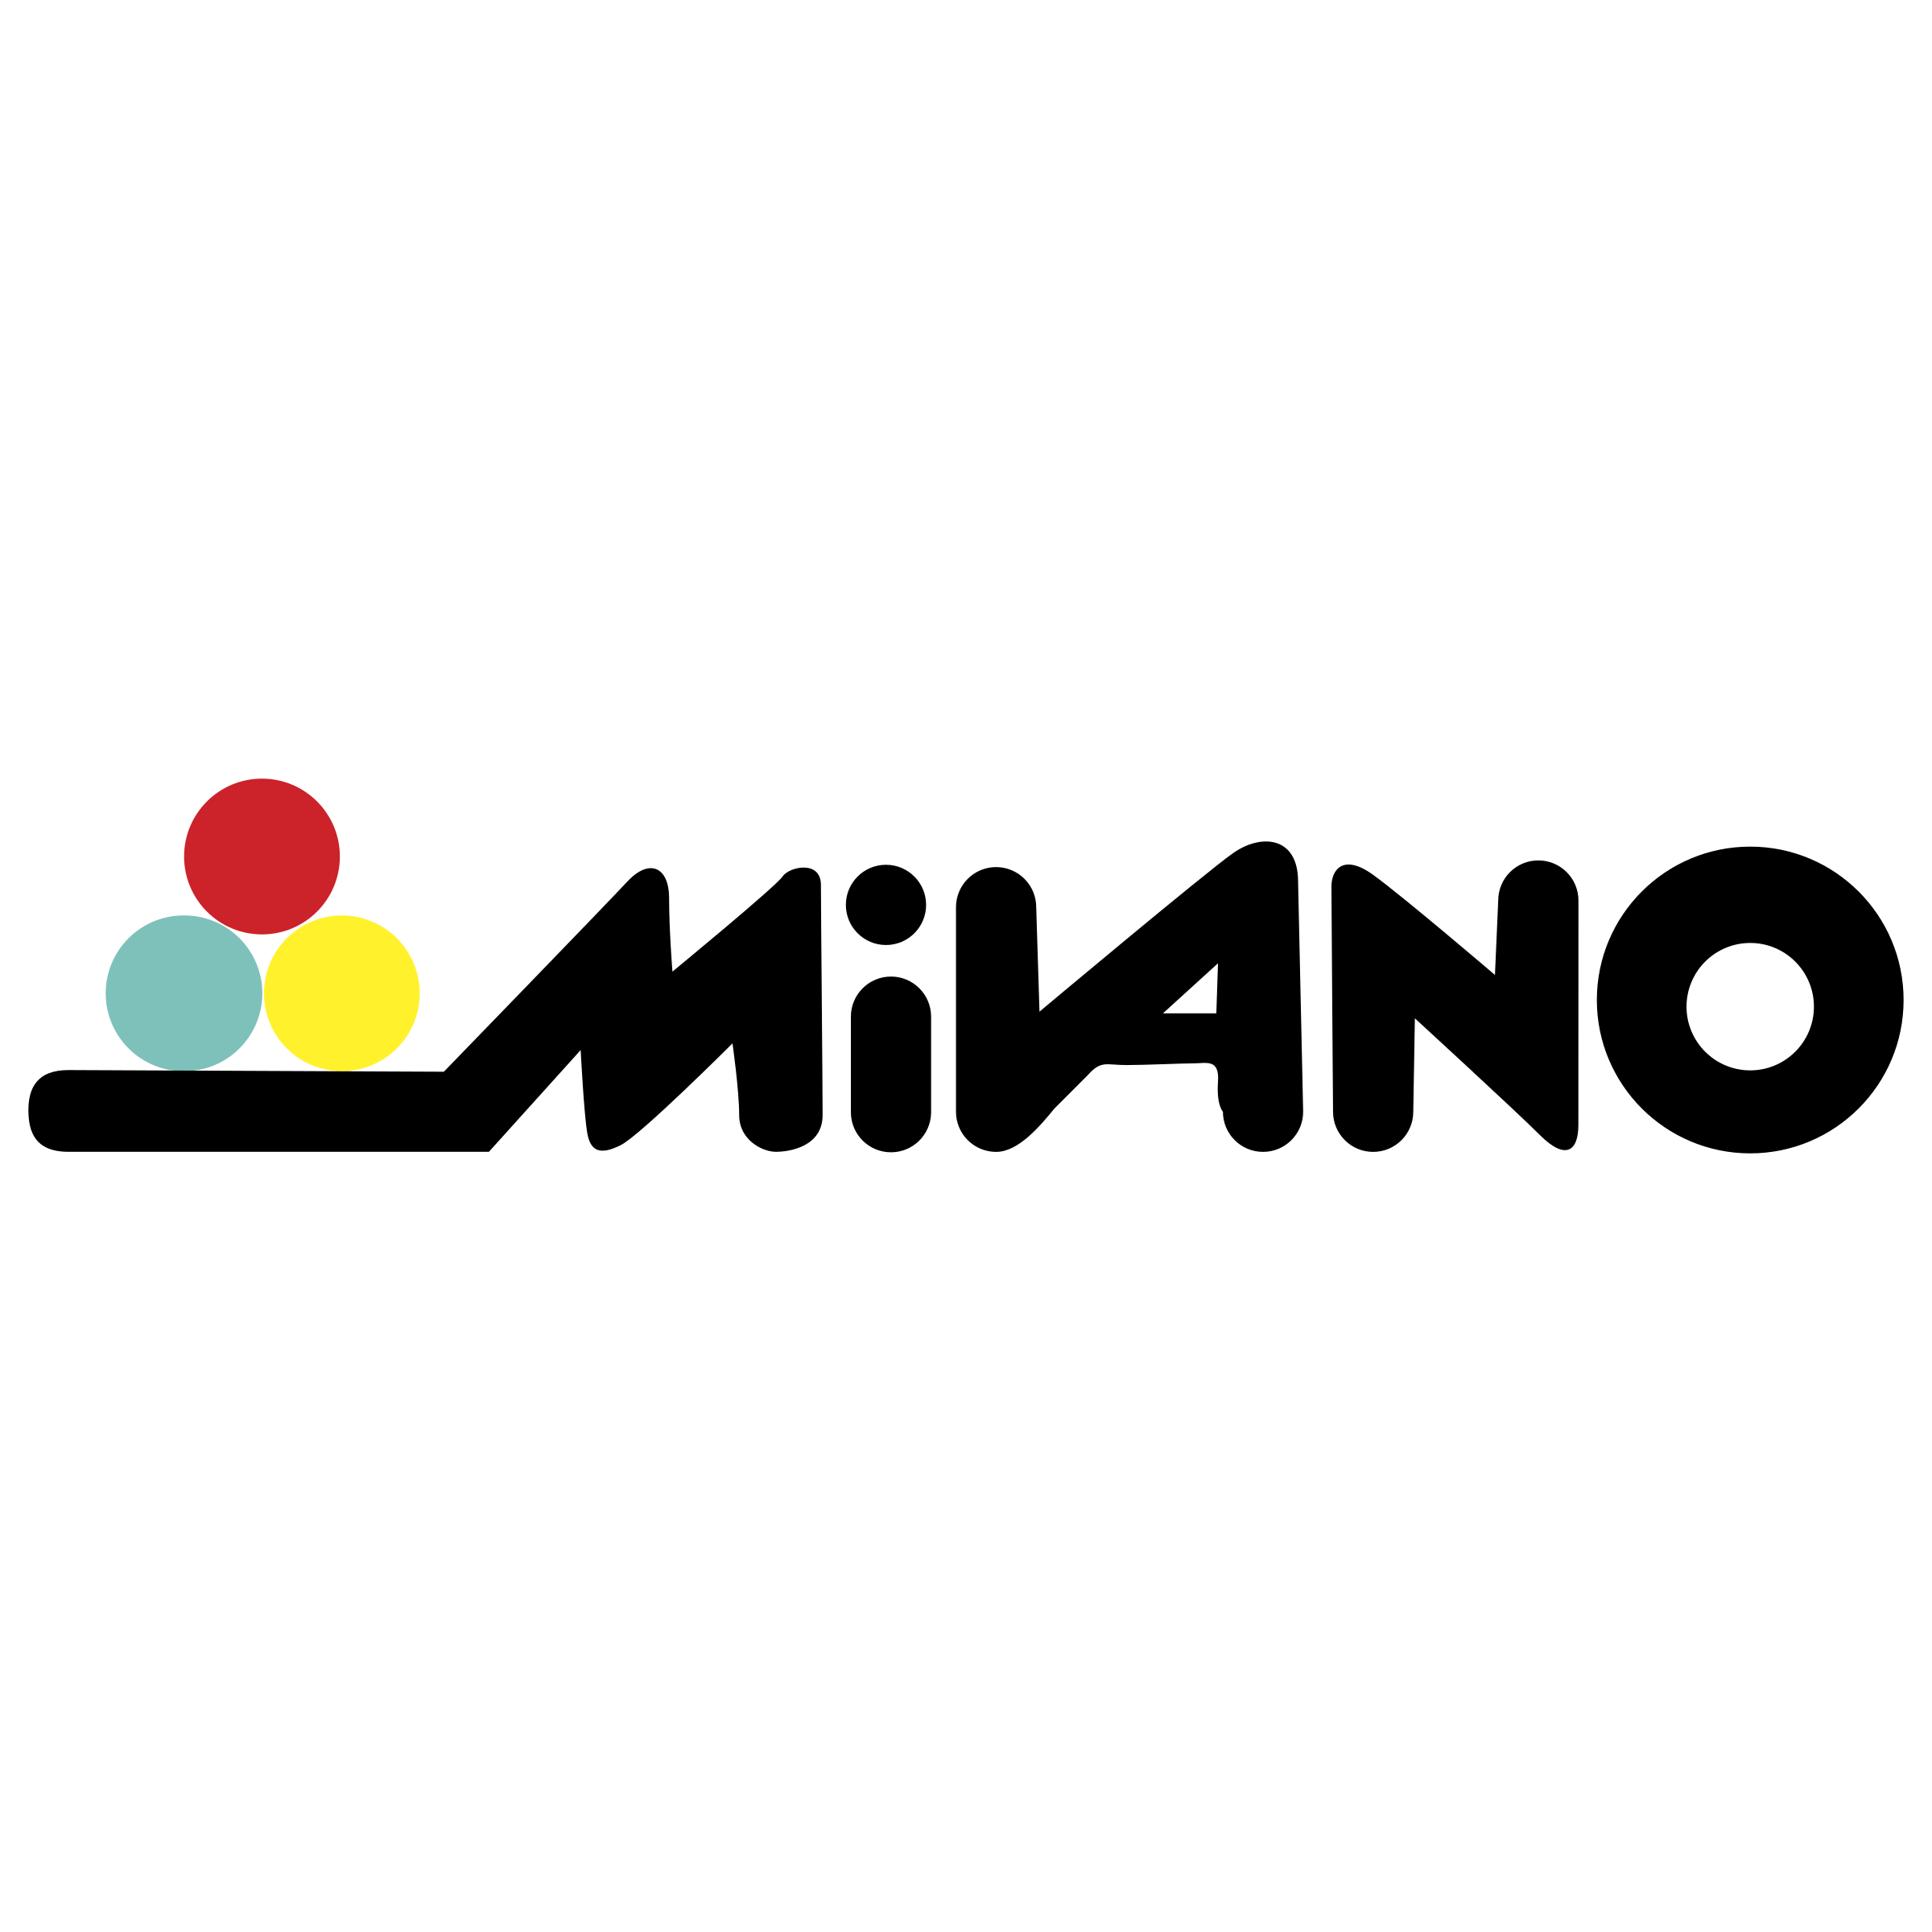 Milano Fashion Week Logo Vector - (.SVG + .PNG) 